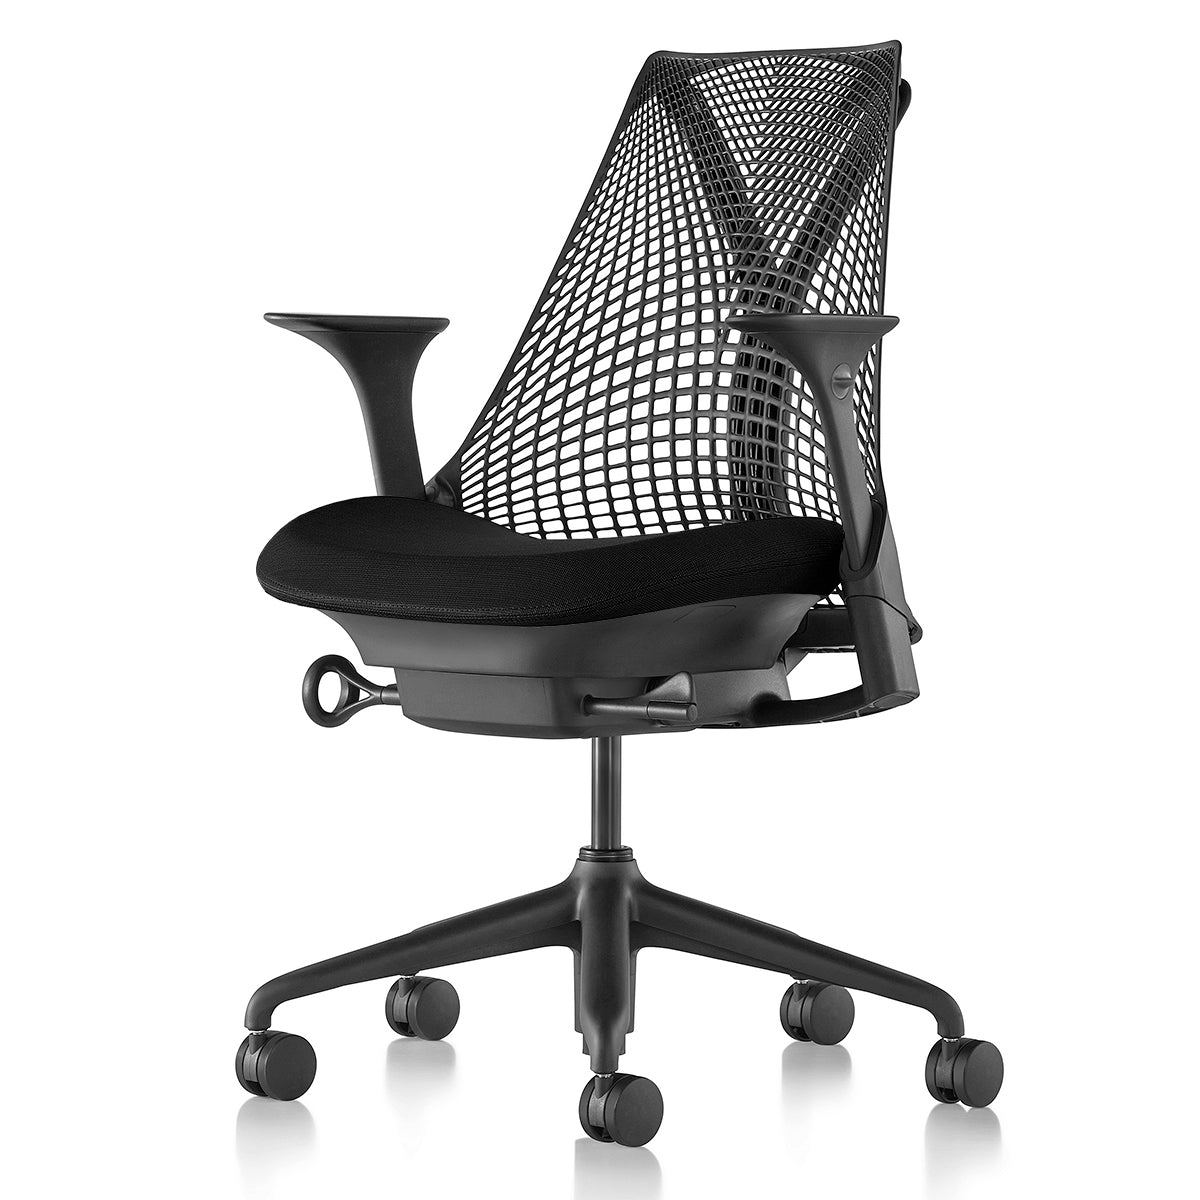 セイルチェア Sayl Chair – THE CHAIR SHOP